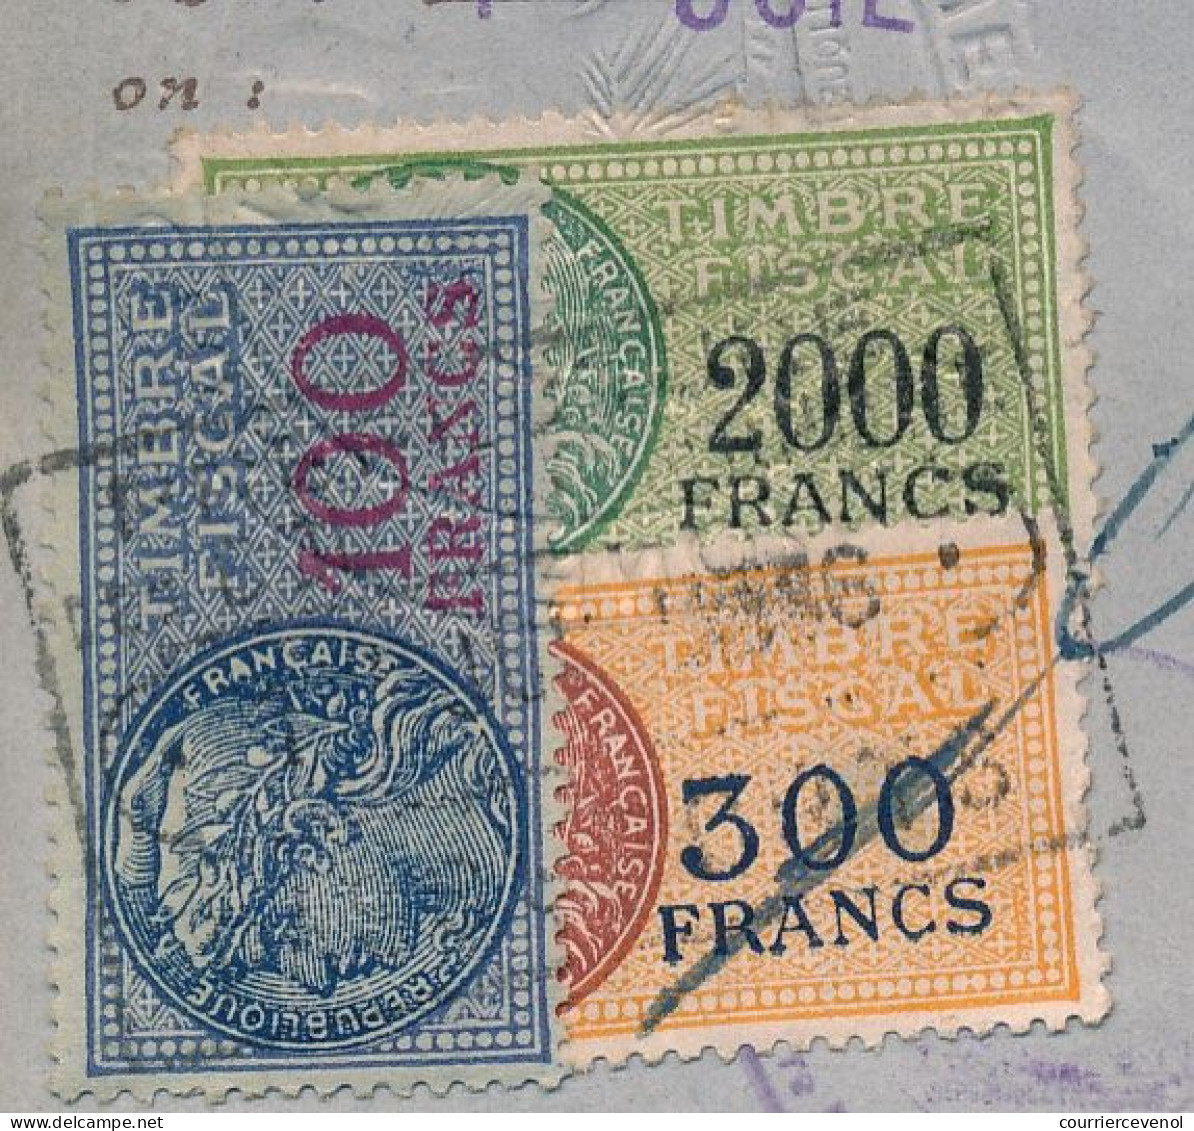 FRANCE - Passeport Délivré à Marseille (B. Du R.) - 1959/1965 - Fiscaux Type Daussy 2000F, 300F,100F + 32,00NF + Visas - Briefe U. Dokumente